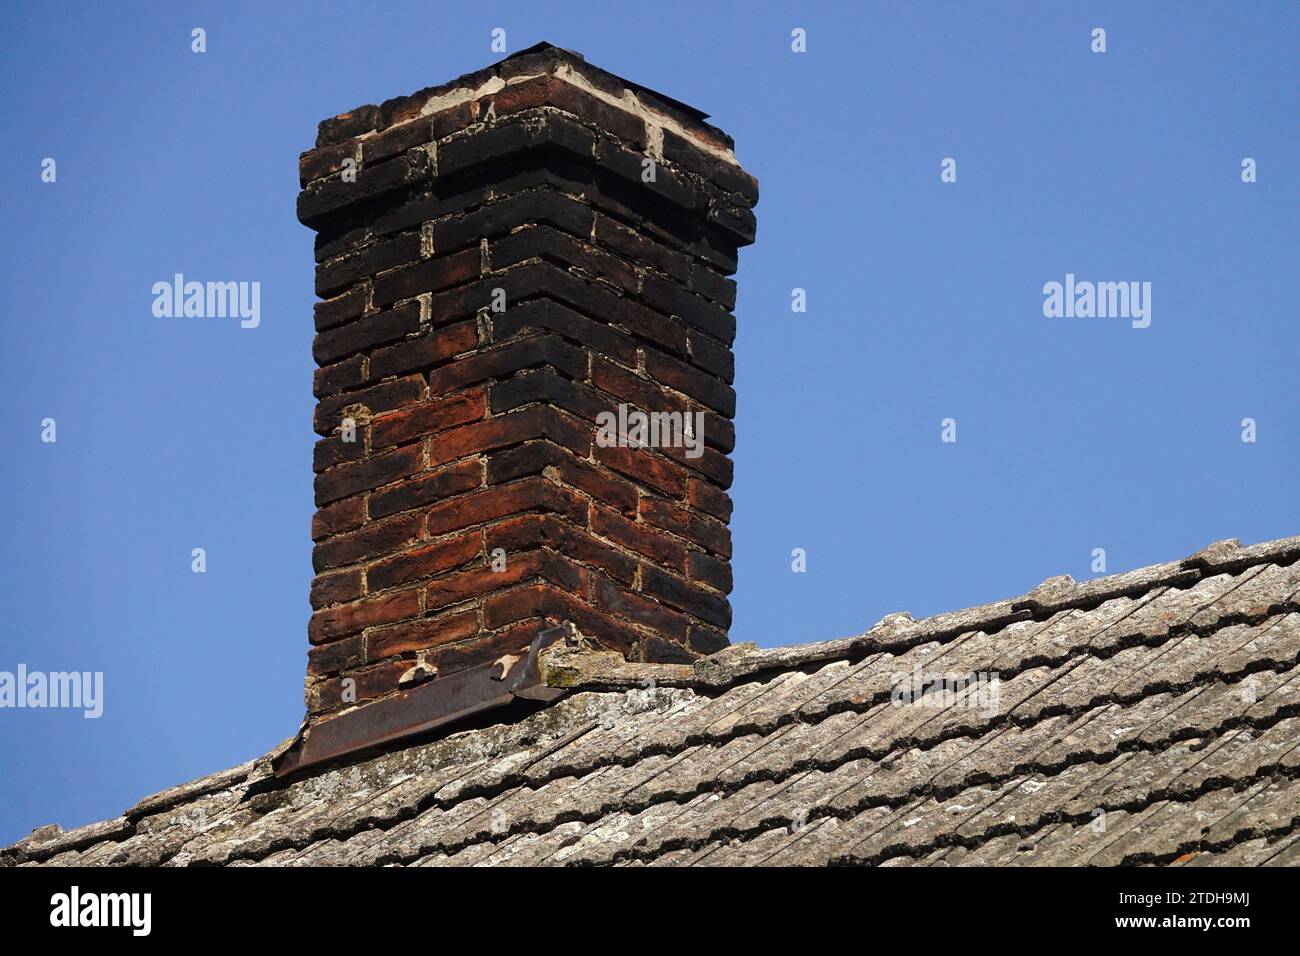 cheminée en brique sur toit de tuiles Banque D'Images